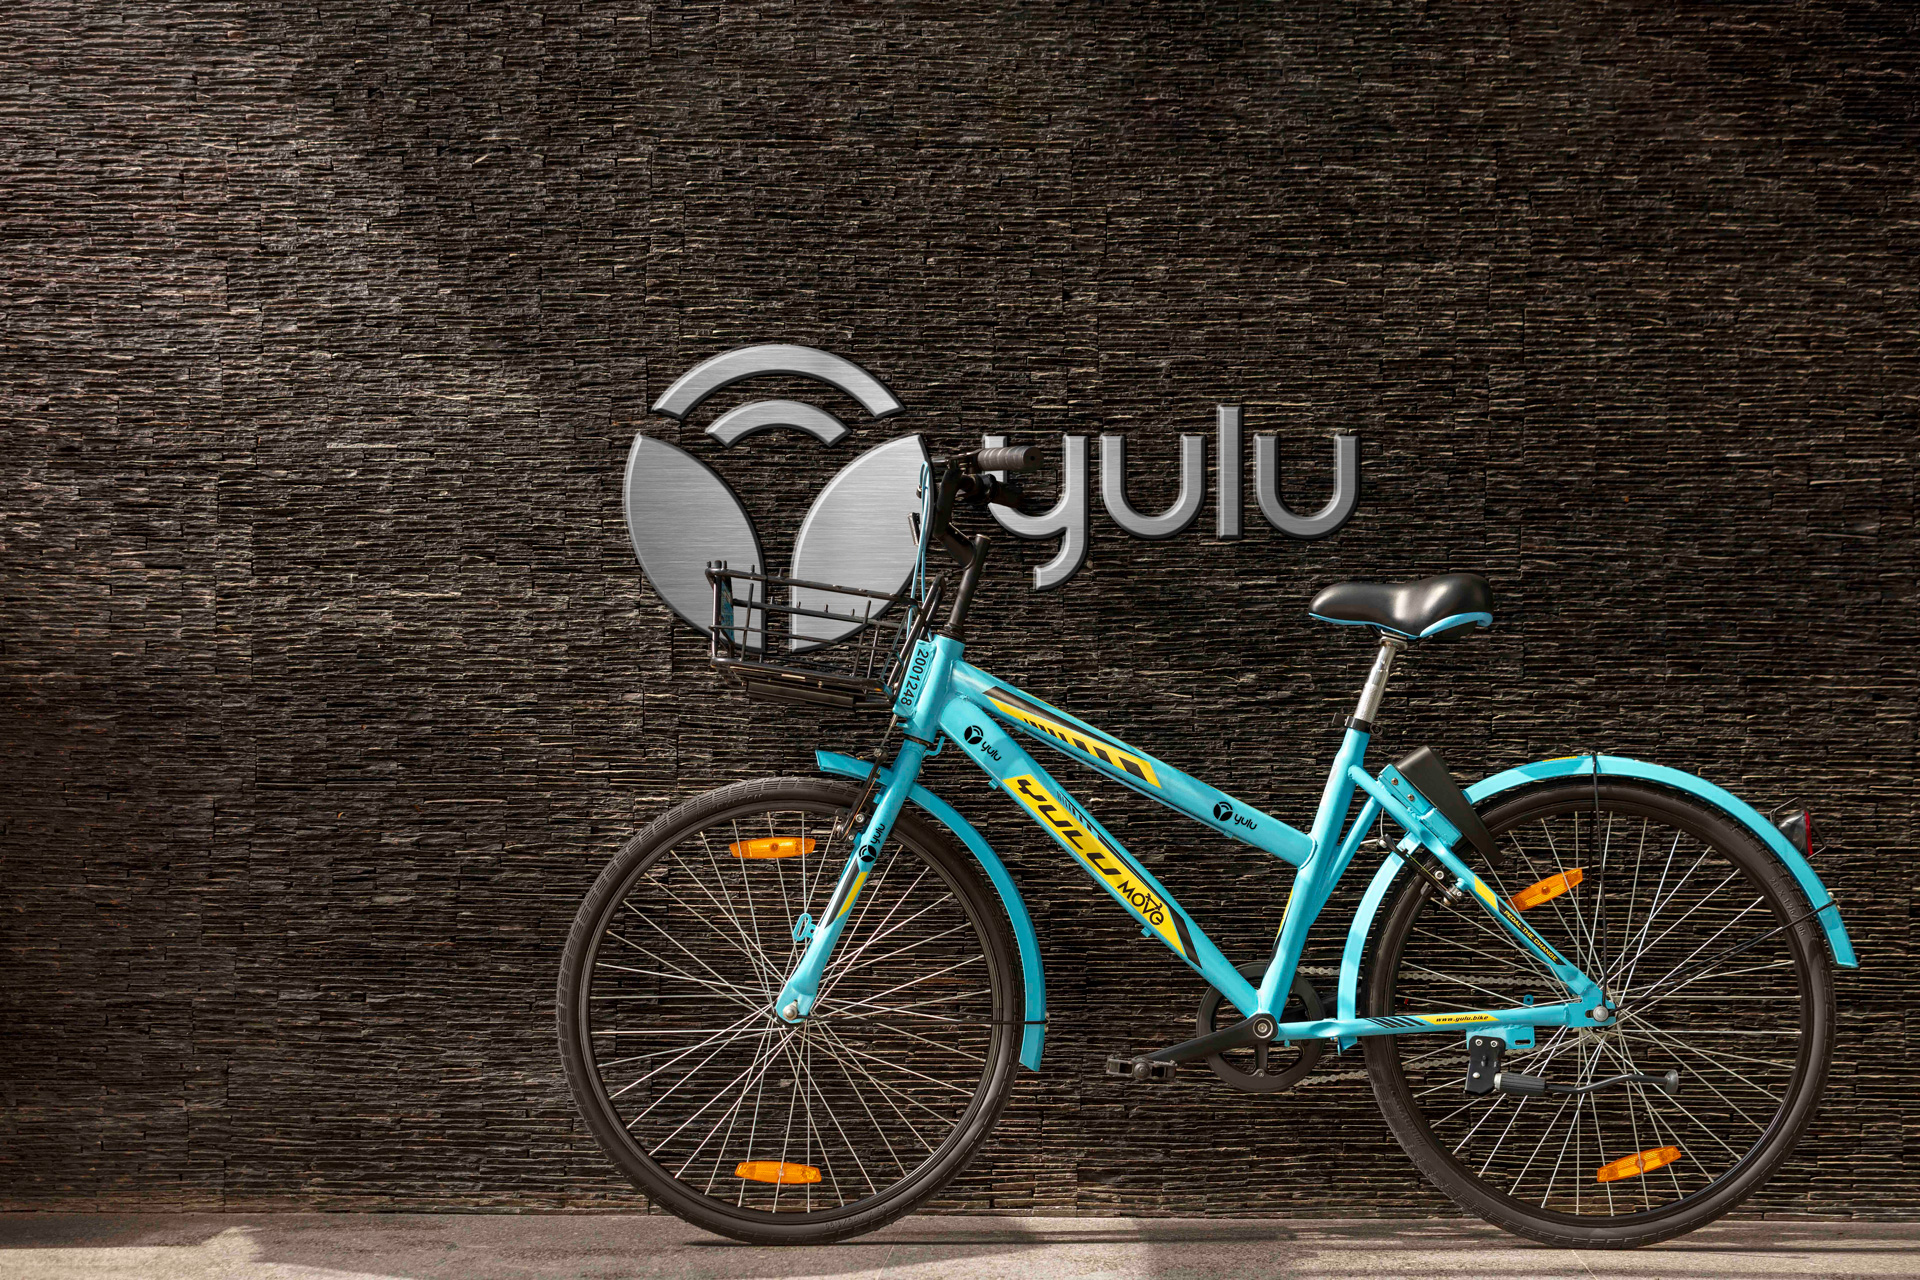 mejores-logos-2021-2022-yulu-bikes-03